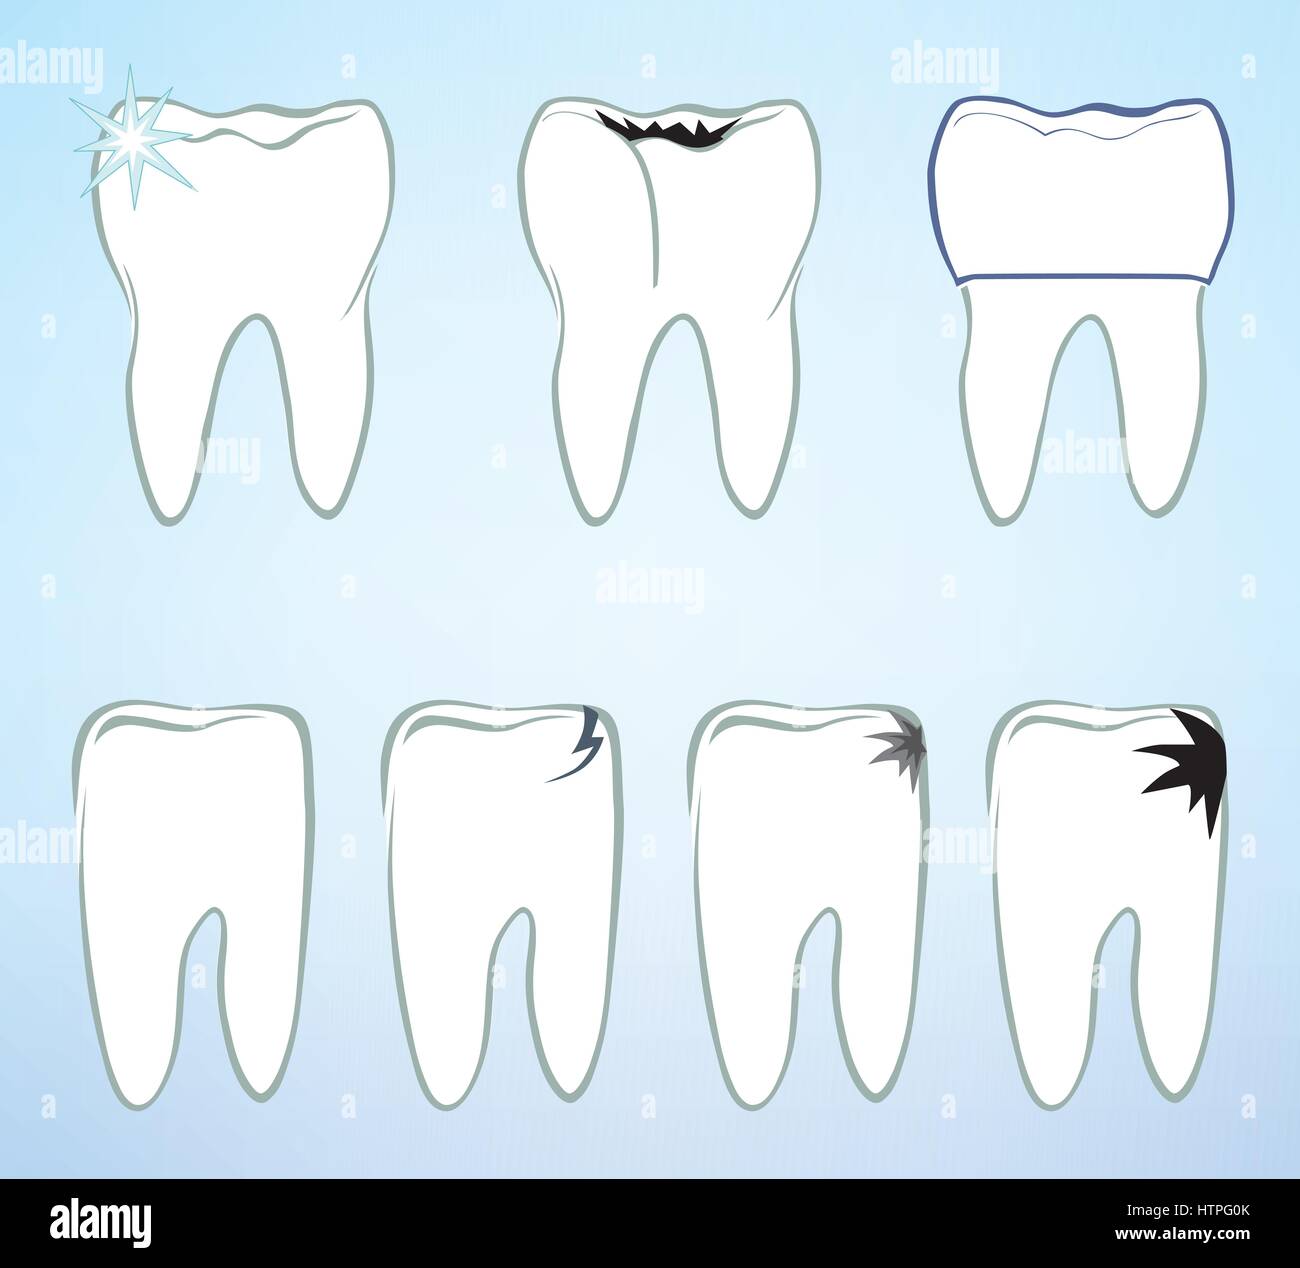 Jeu de dents. les dents blanches signe. médical dentaire colection isolés. Illustration de Vecteur